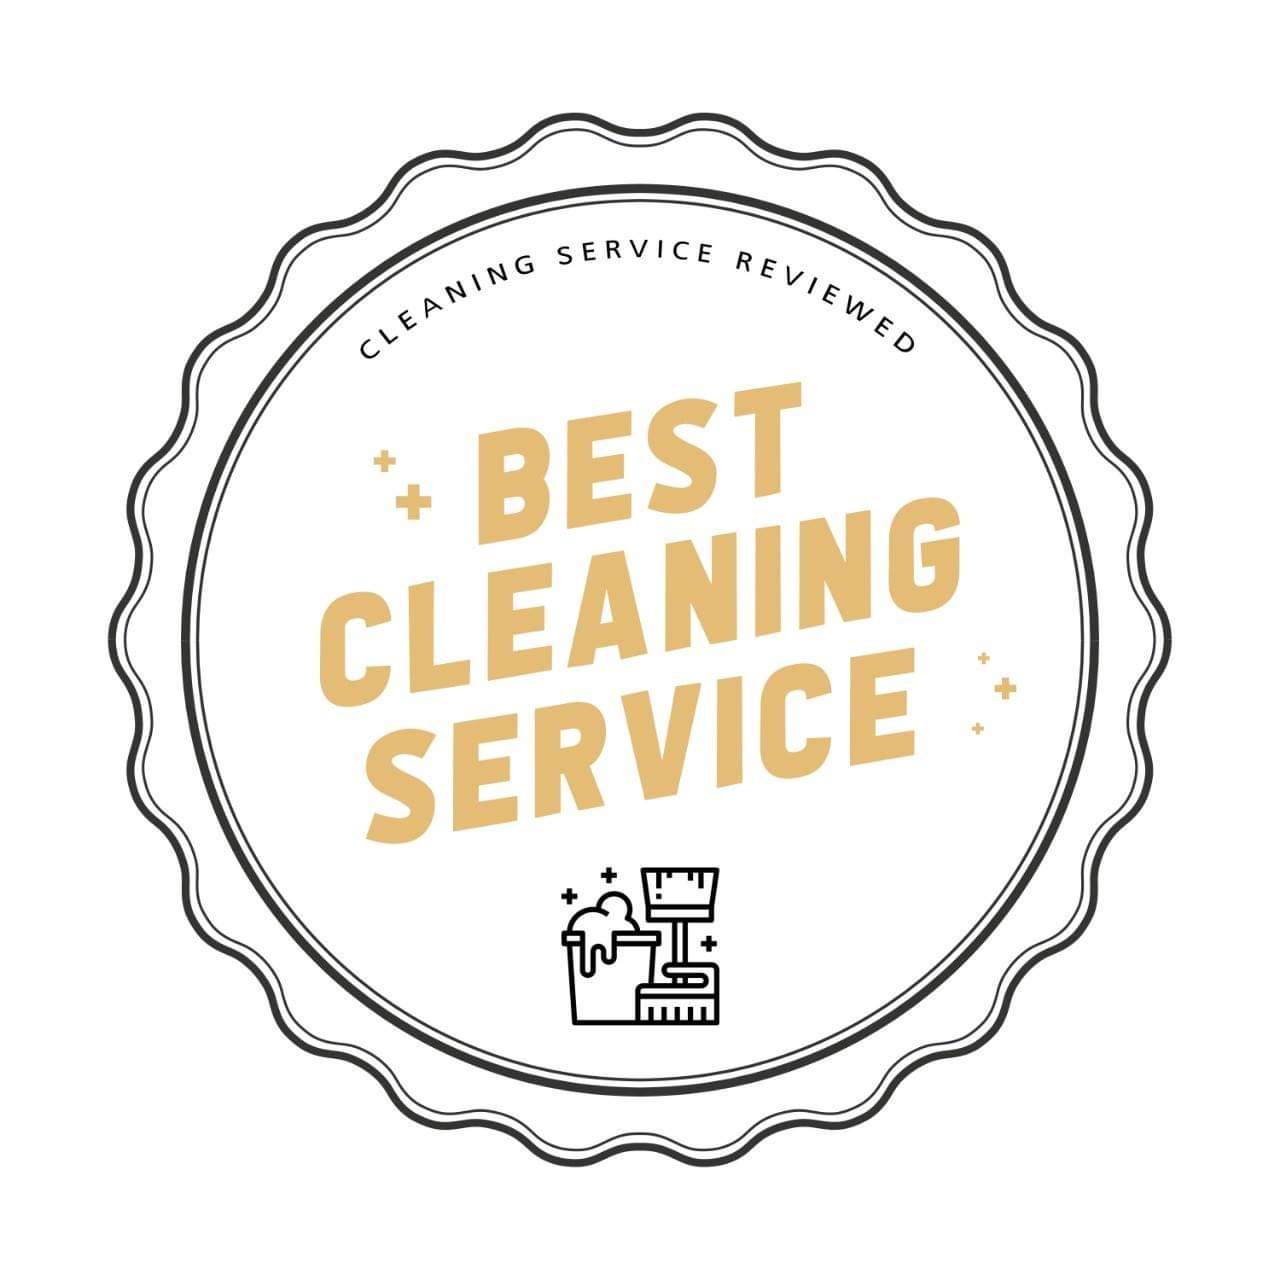 Voted best cleaning service in Marietta